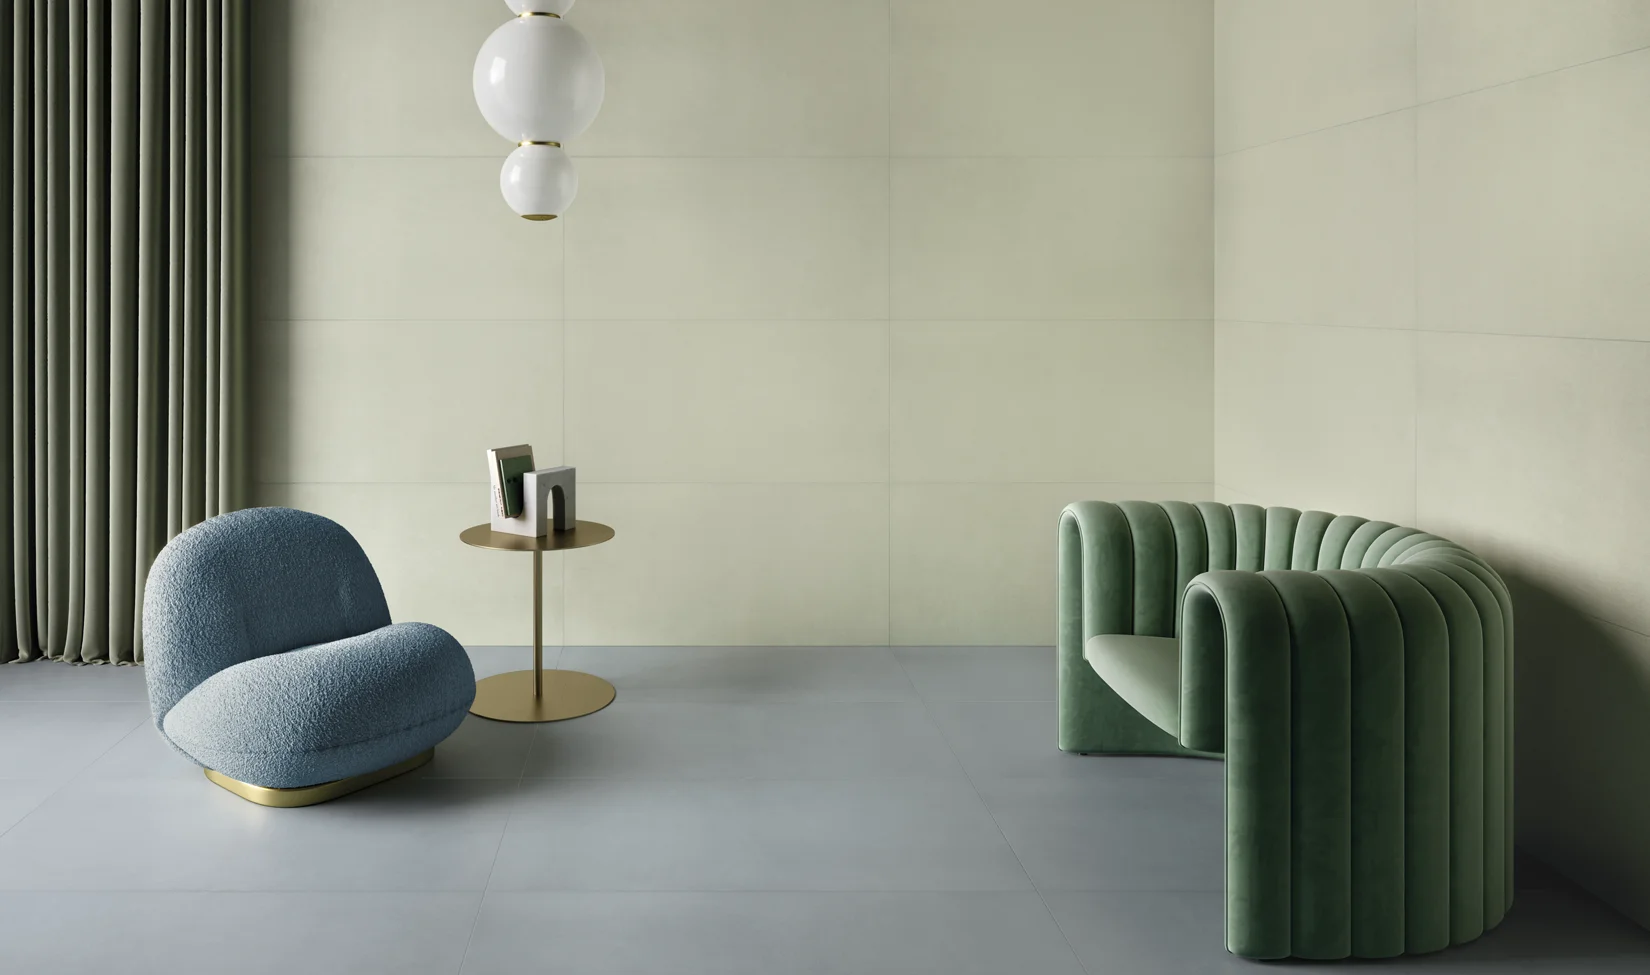 Salotto minimalista con pavimento in gres porcellanato Elements design colore avio, divani moderni sage, lampada a sospensione e tavolino.